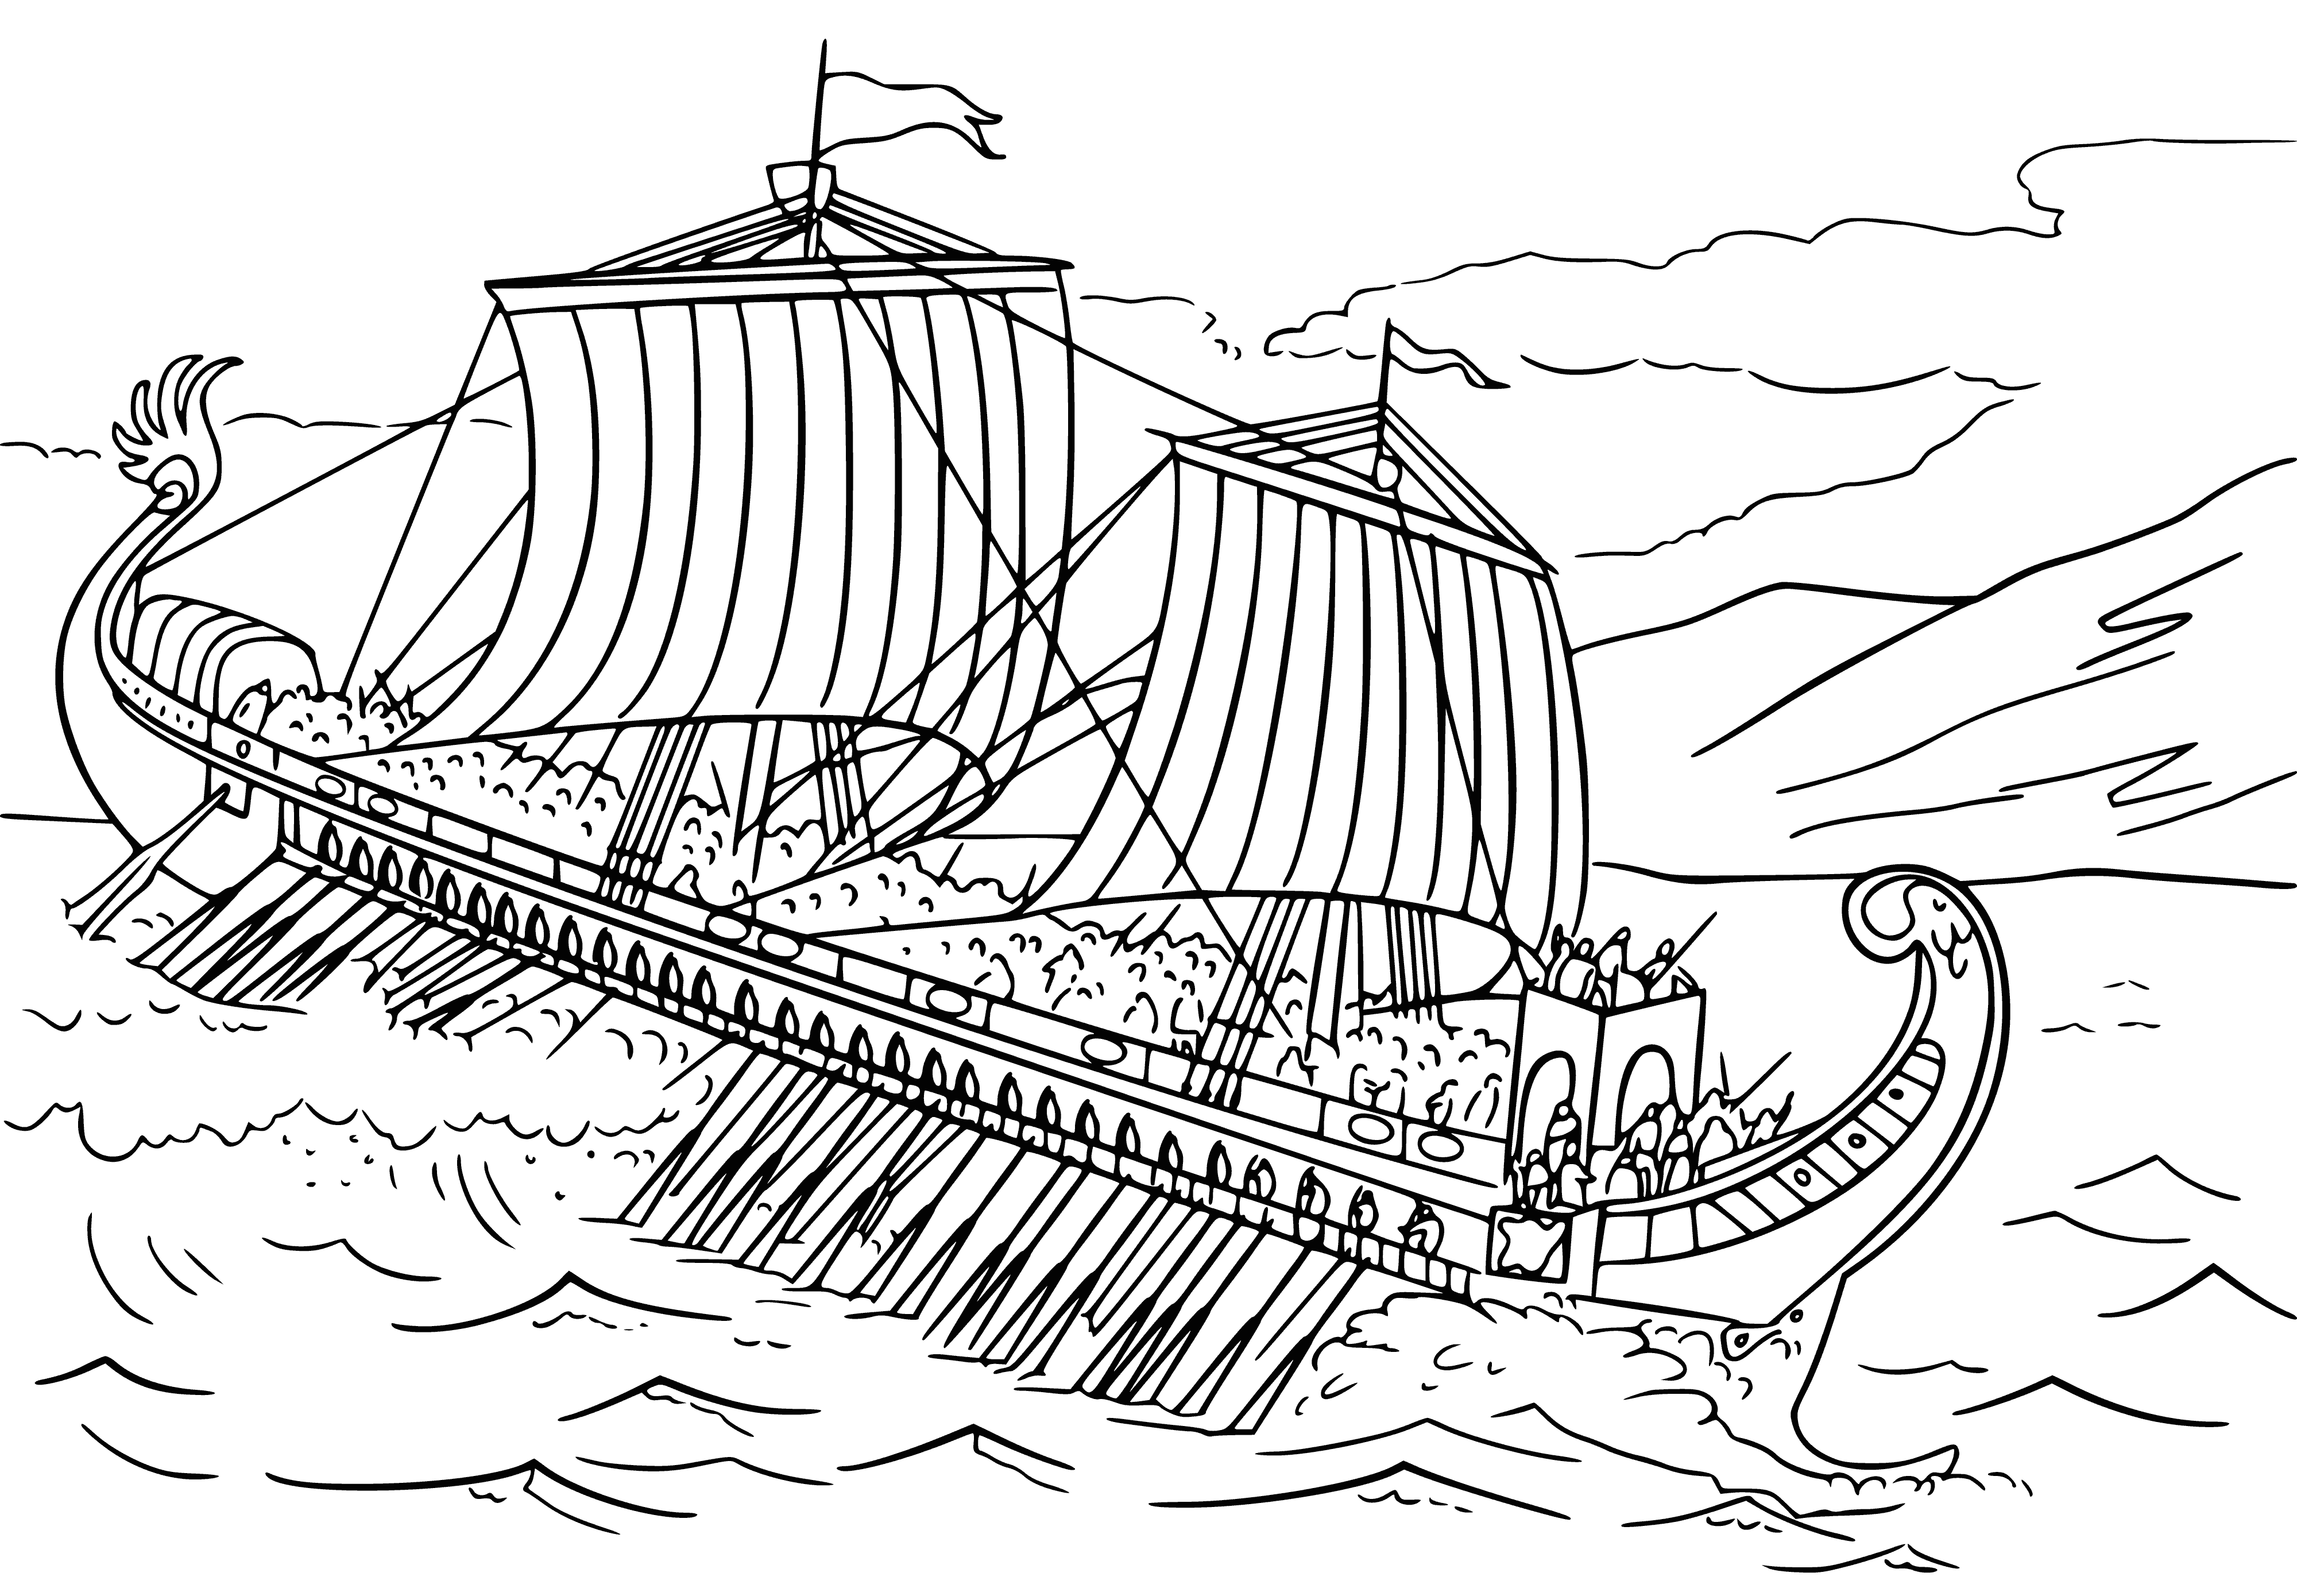 Antique battle ship coloring page